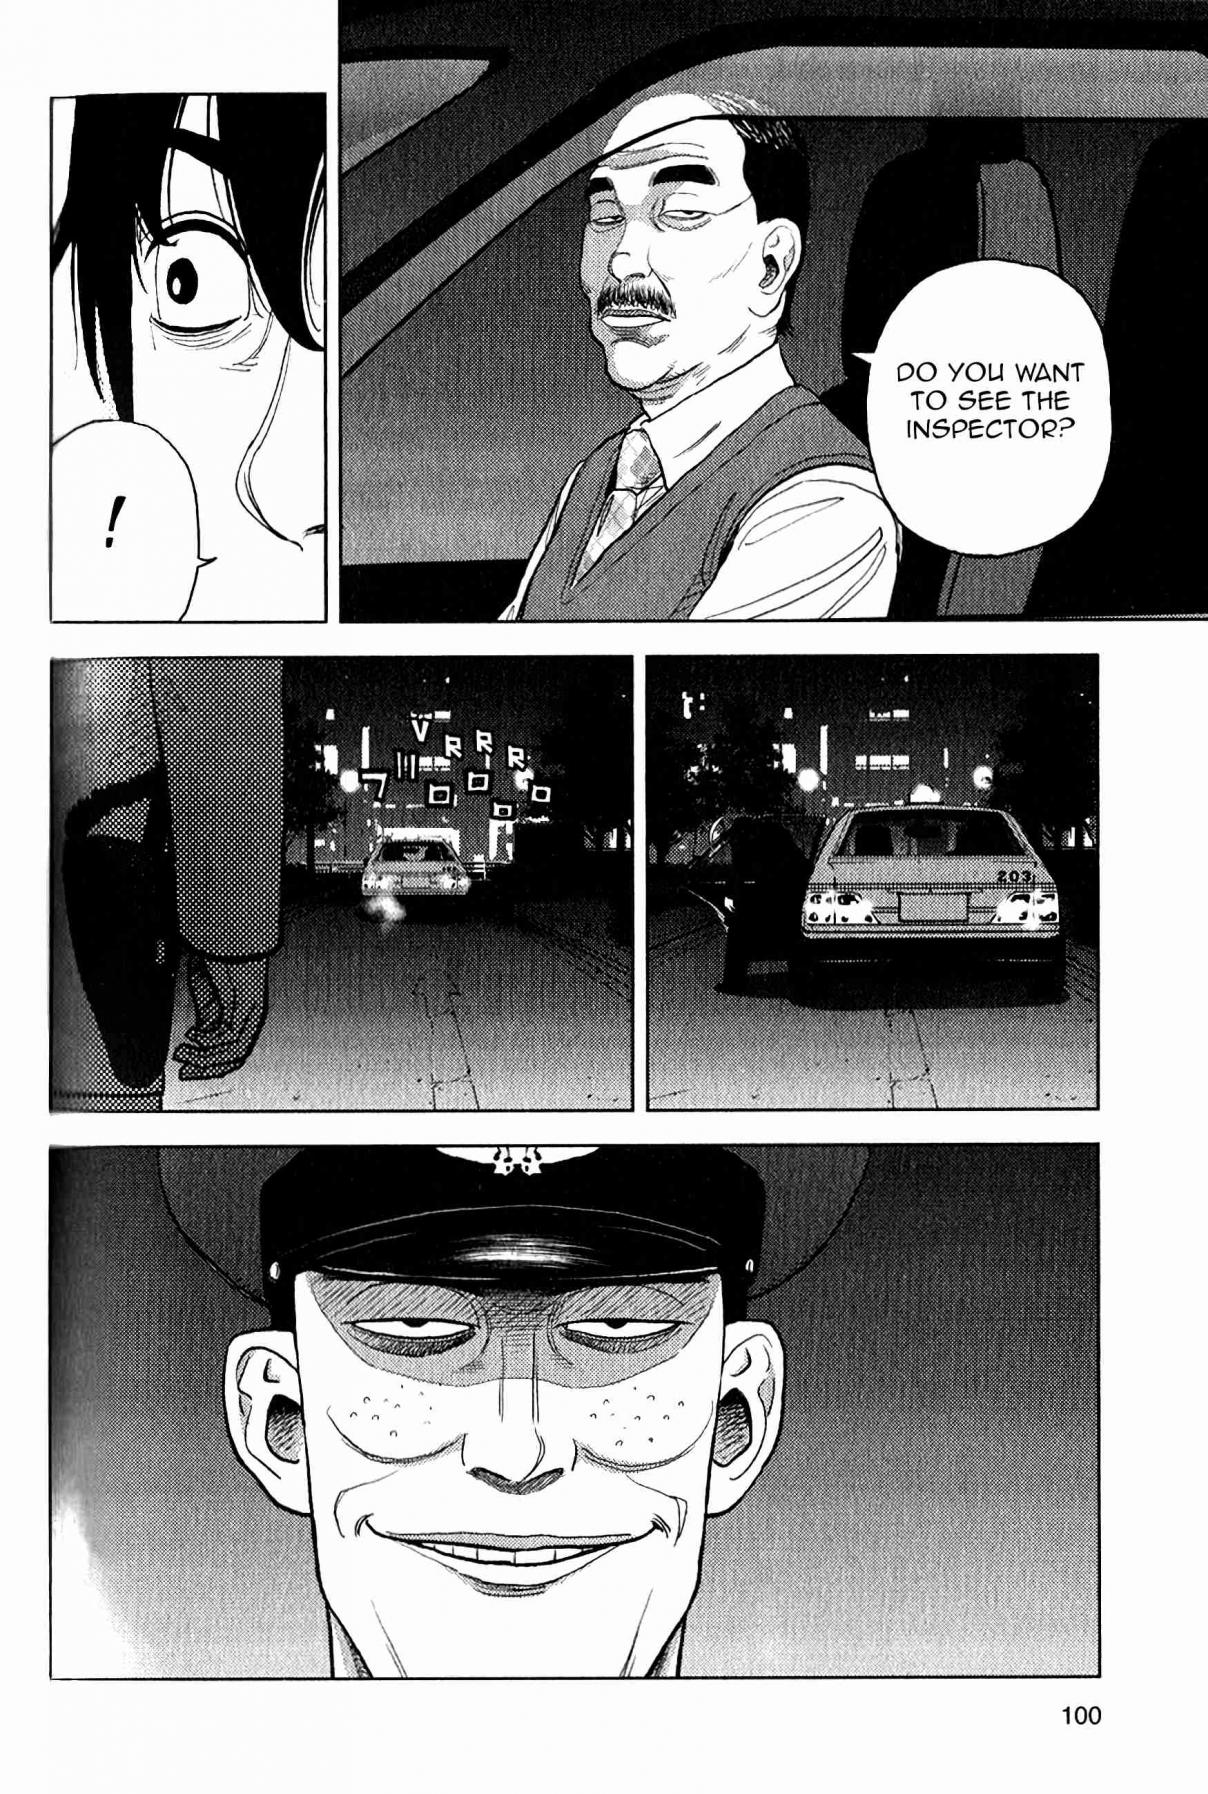 Inspector Kurokochi Vol. 2 Ch. 11 The Secret of the Red Blades